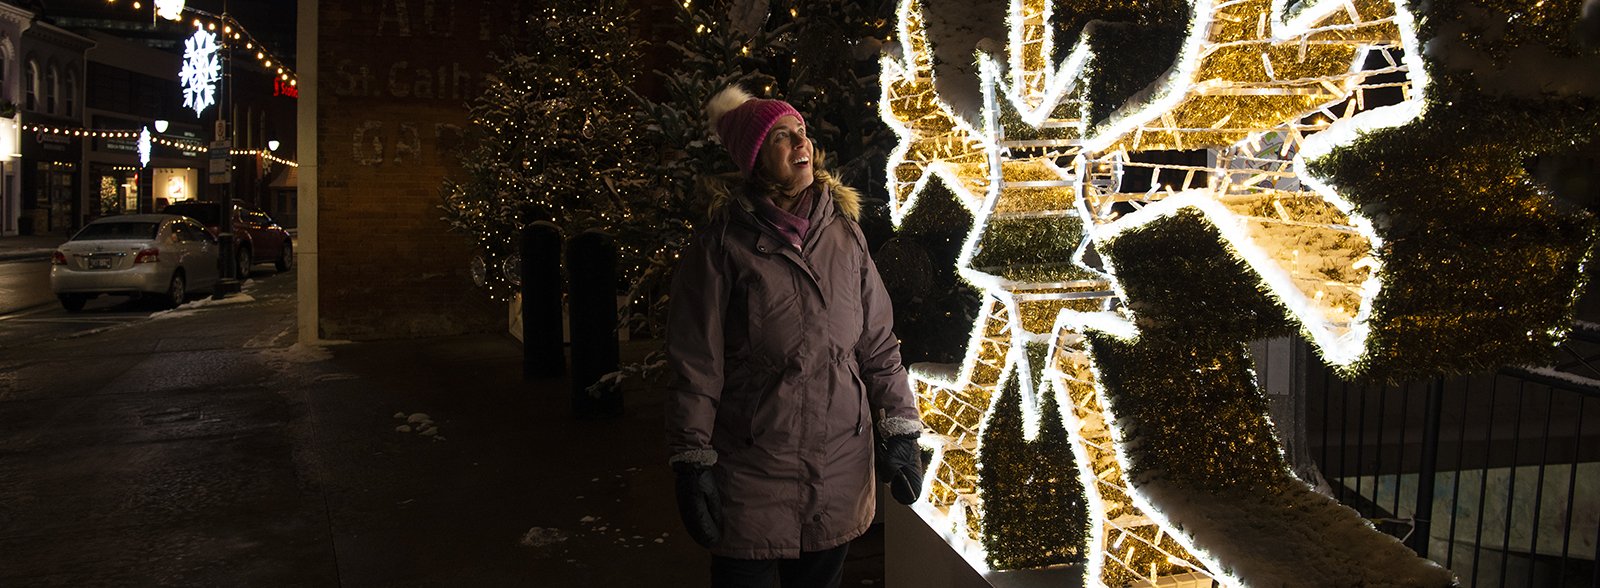 woman looking at illuminated snowflake